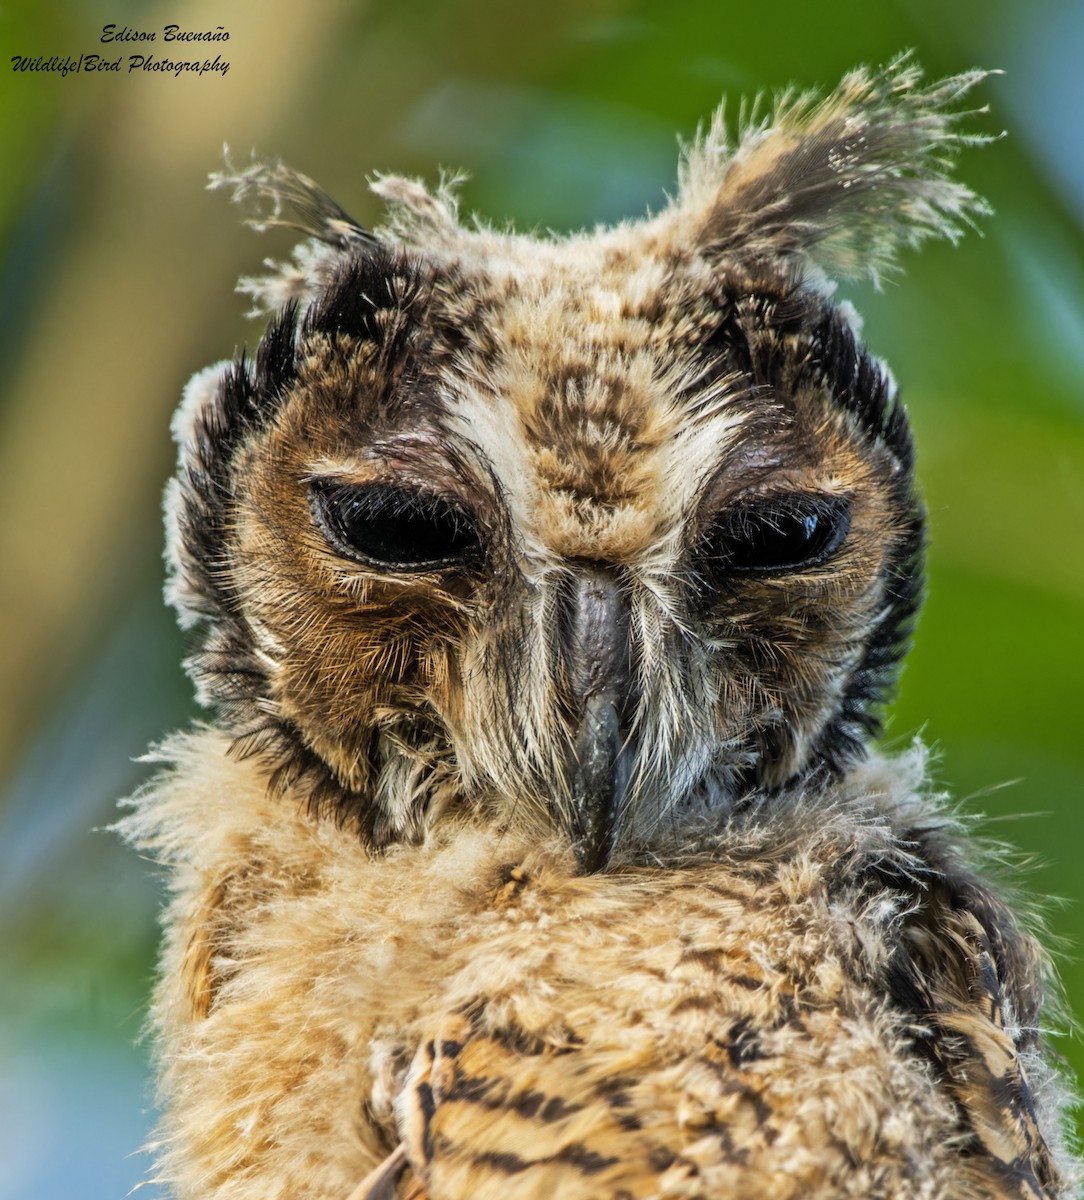 Striped Owl - Edison Buenano